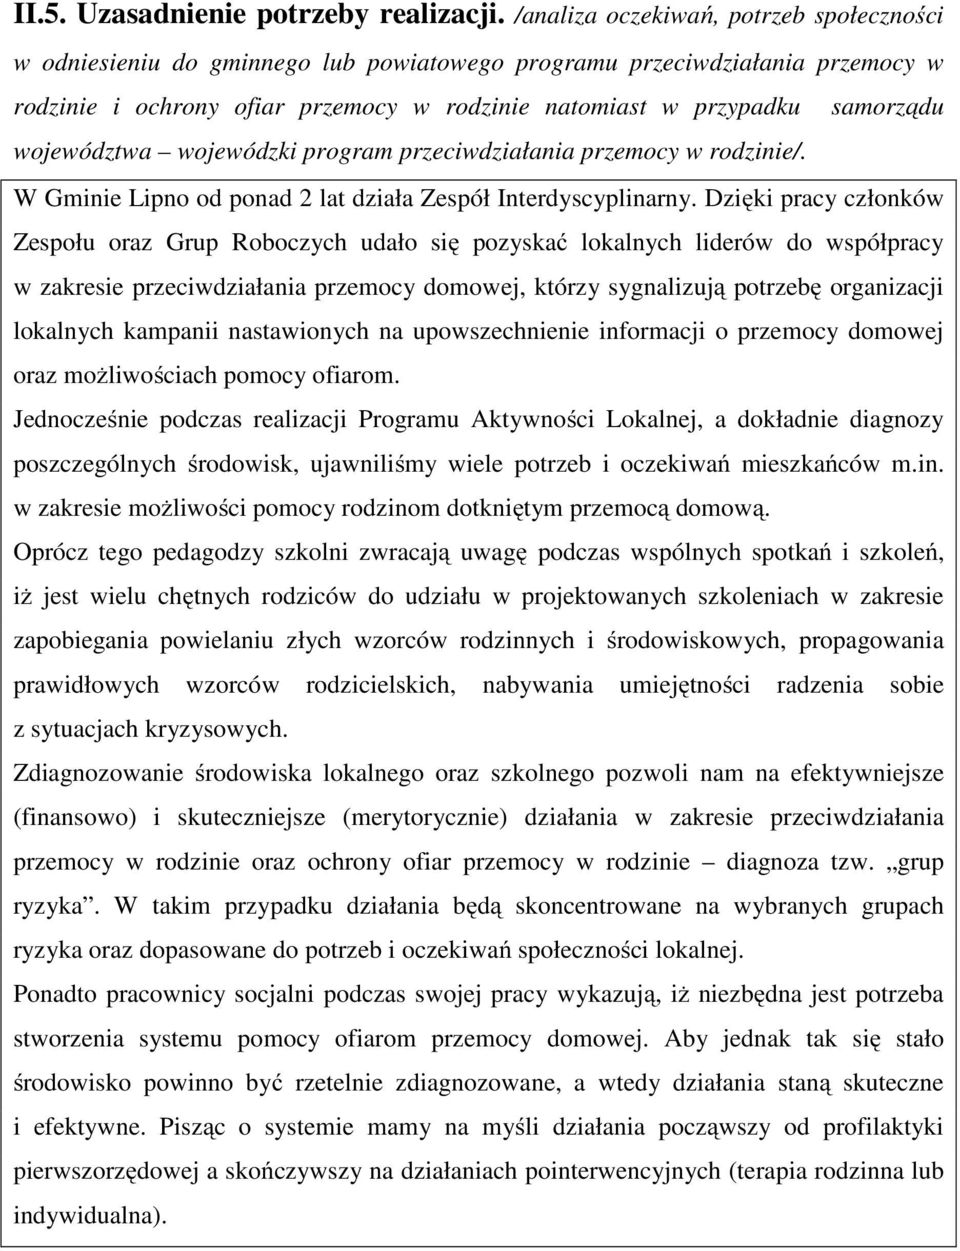 województwa wojewódzki program przeciwdziałania przemocy w rodzinie/. W Gminie Lipno od ponad 2 lat działa Zespół Interdyscyplinarny.